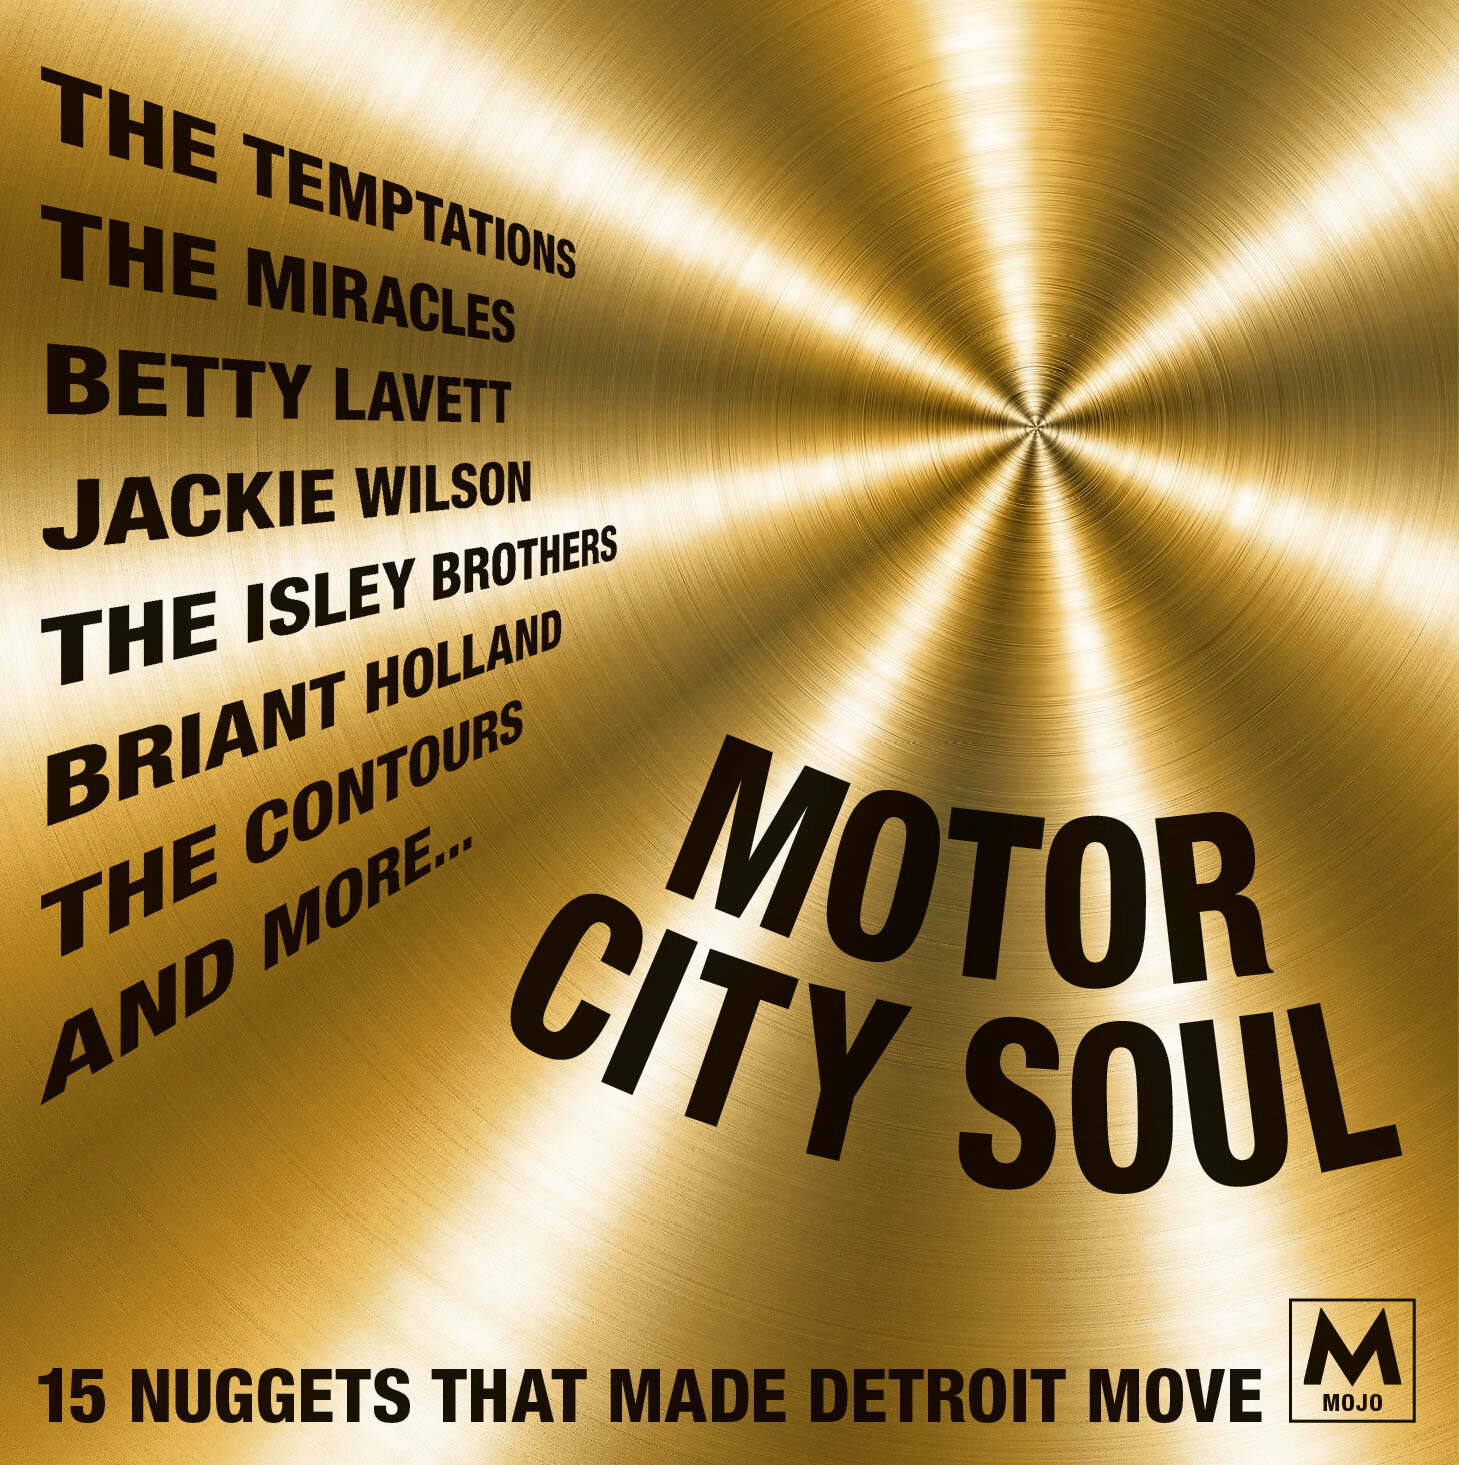 MOJO306_Motor City Soul CD.jpg